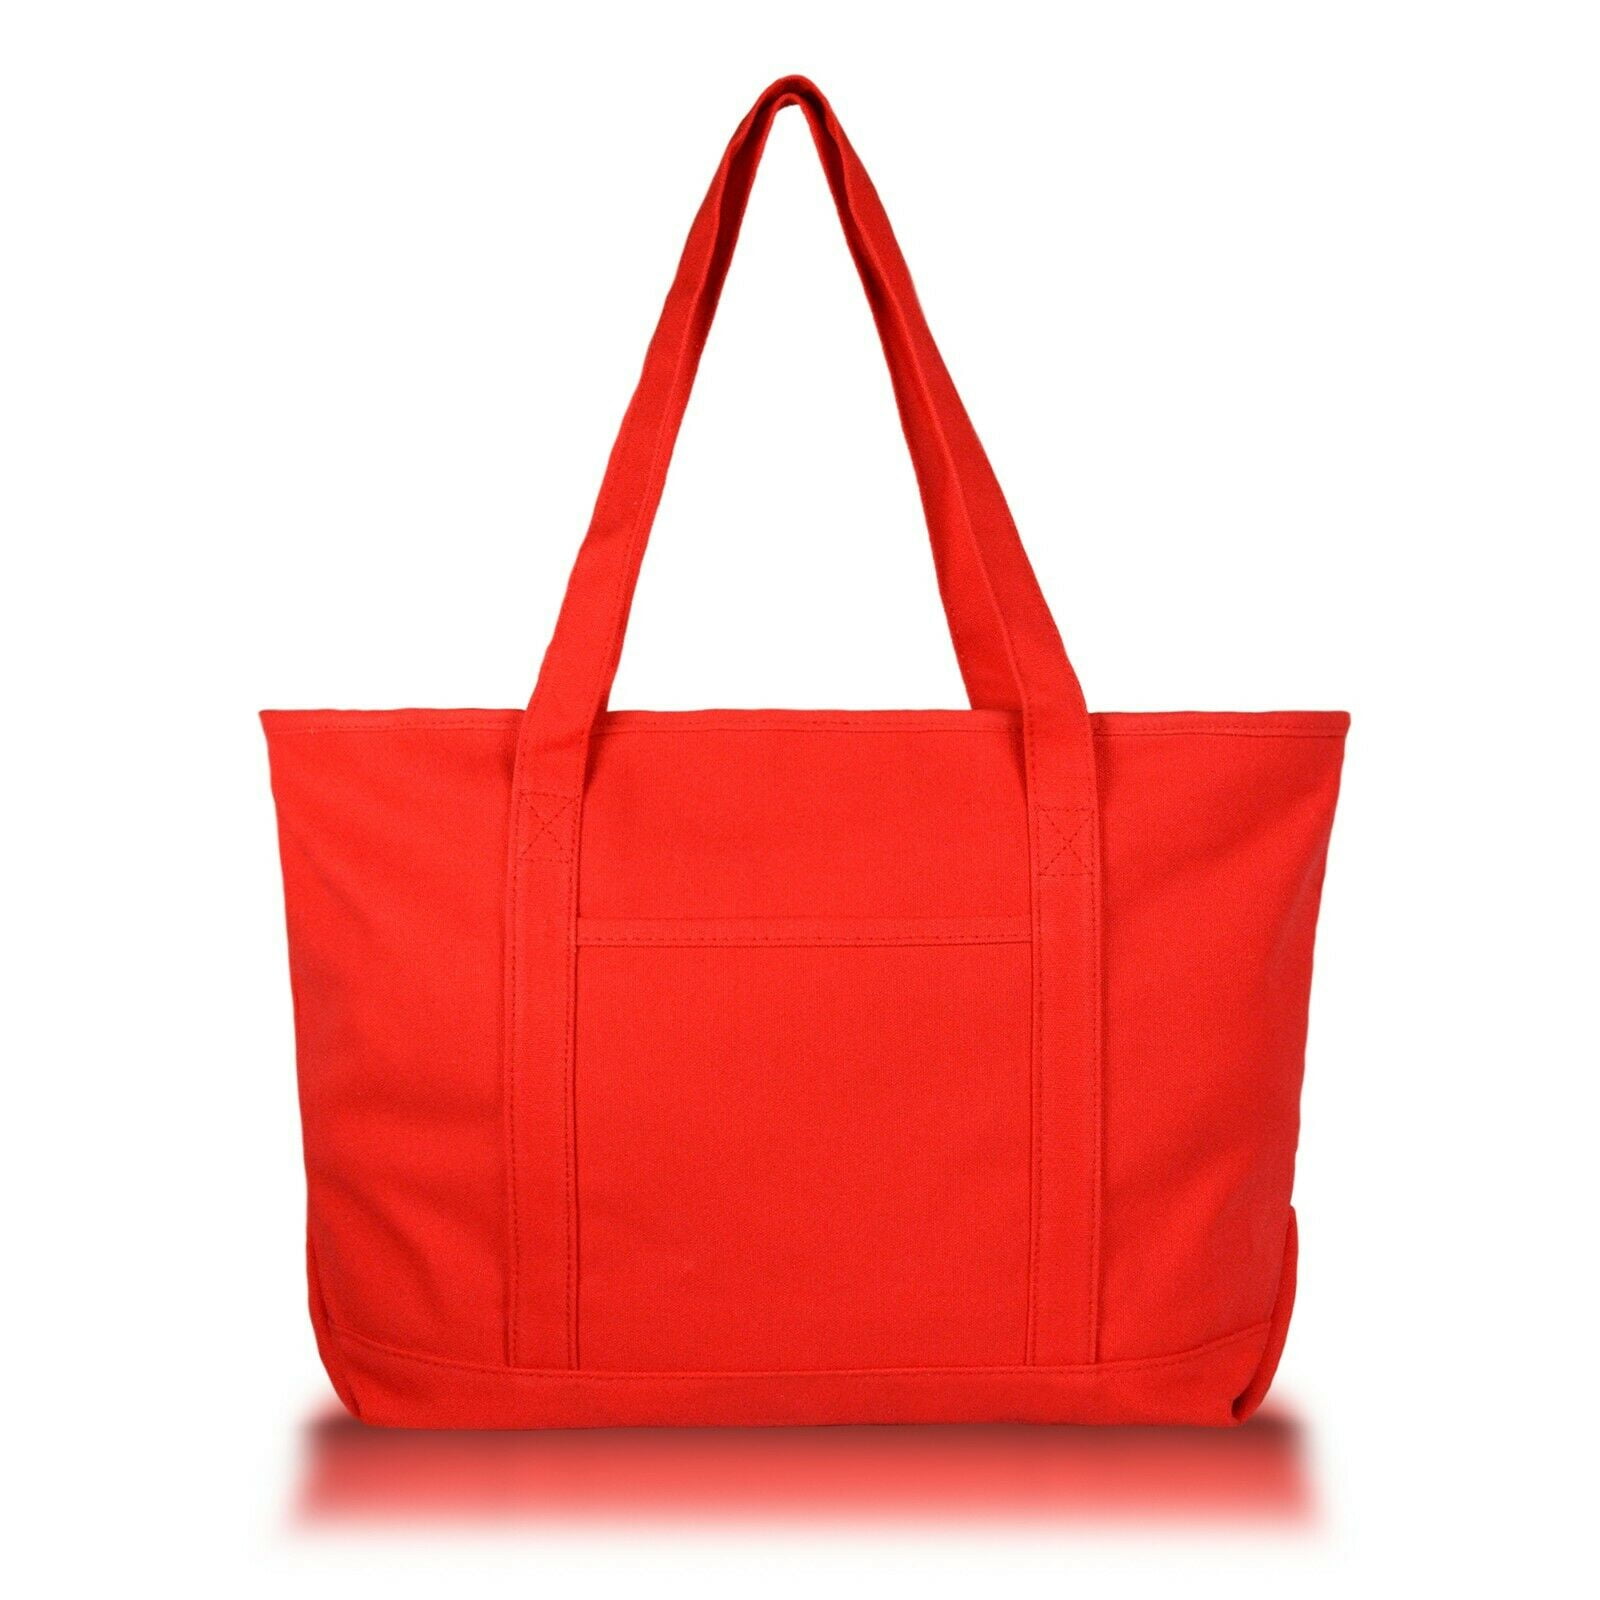 Zipper tote bag – THE BAG